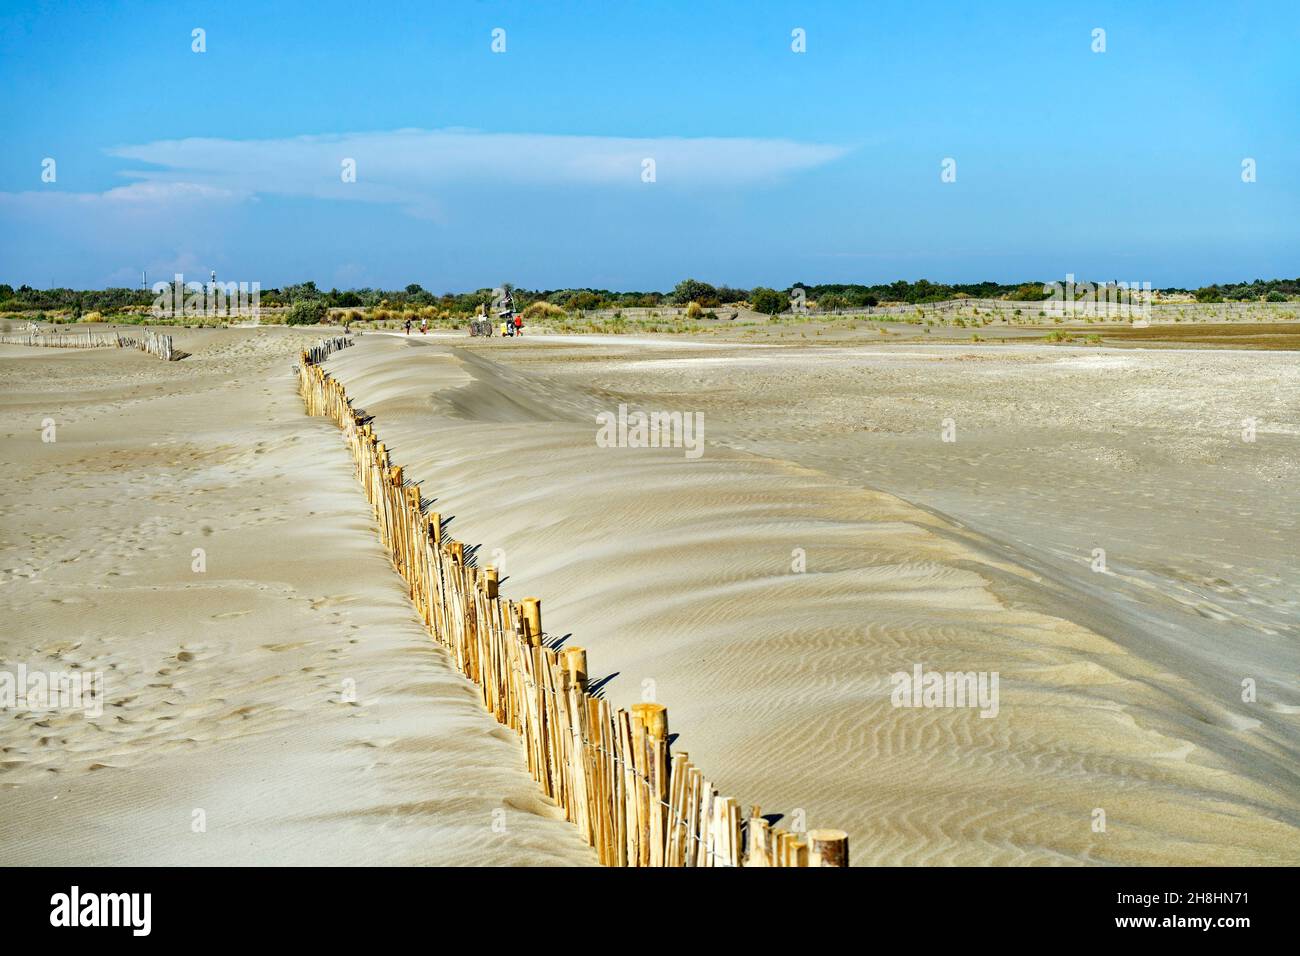 France, Gard, Camargue, Le Grau du Roi, Espiguette beach, the conservation area of the dunes of Espiguette Stock Photo